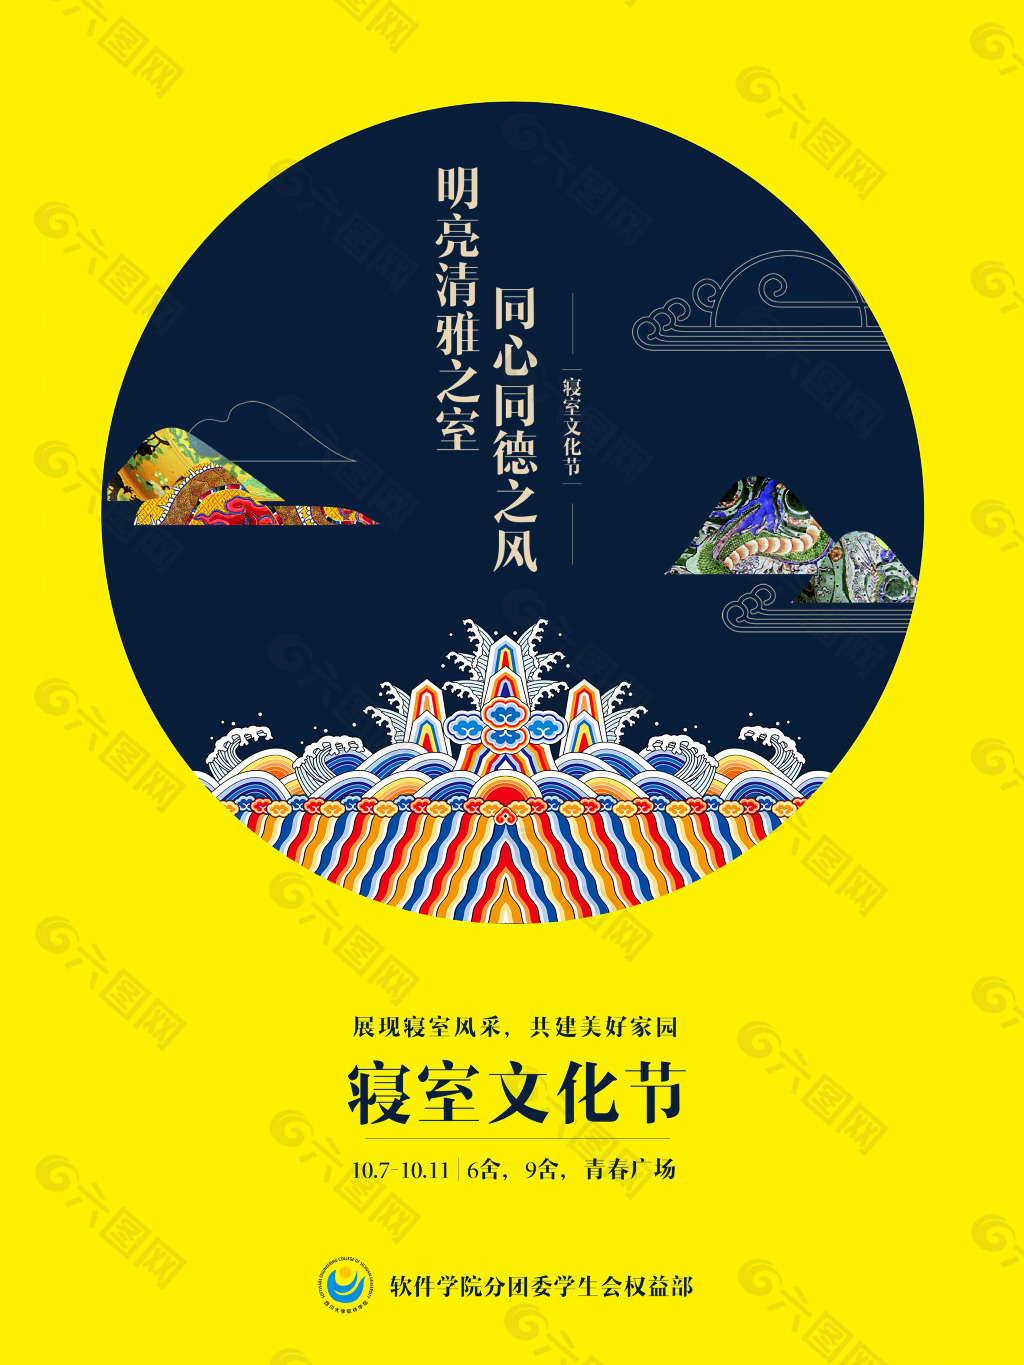 寝室文化节 中国古典风格海报